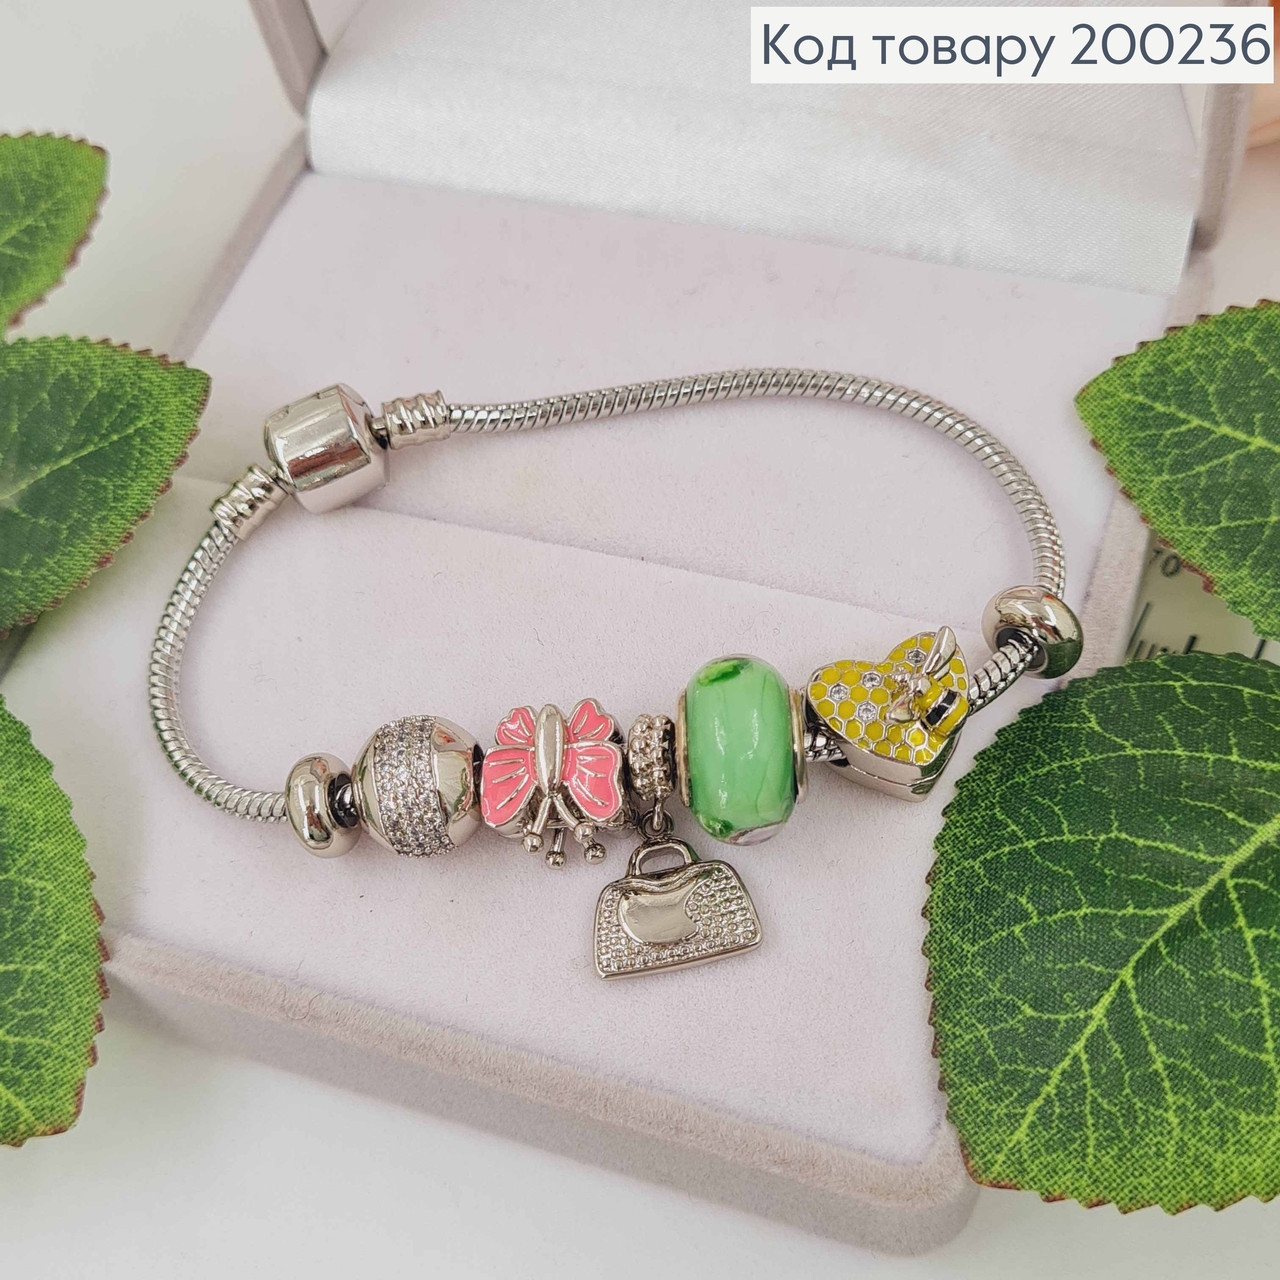 Жіночий браслет на руку з зеленим шармиком трояндами та рожевим метеликом, Сріблястий браслет Xuping 18К